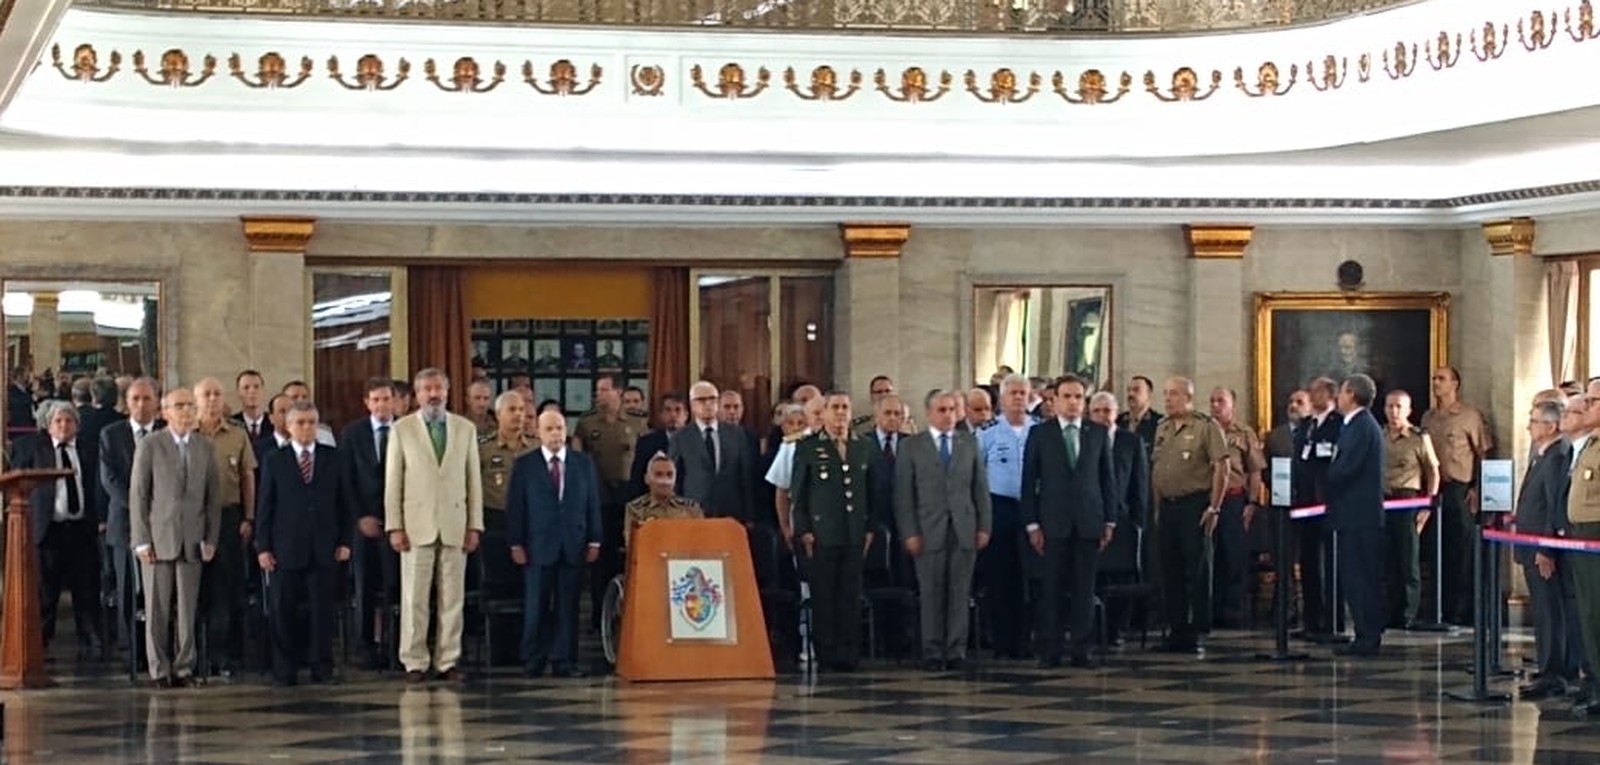 Cerimônia marca fim da intervenção federal no RJ: 'Cumprimos a missão', diz general